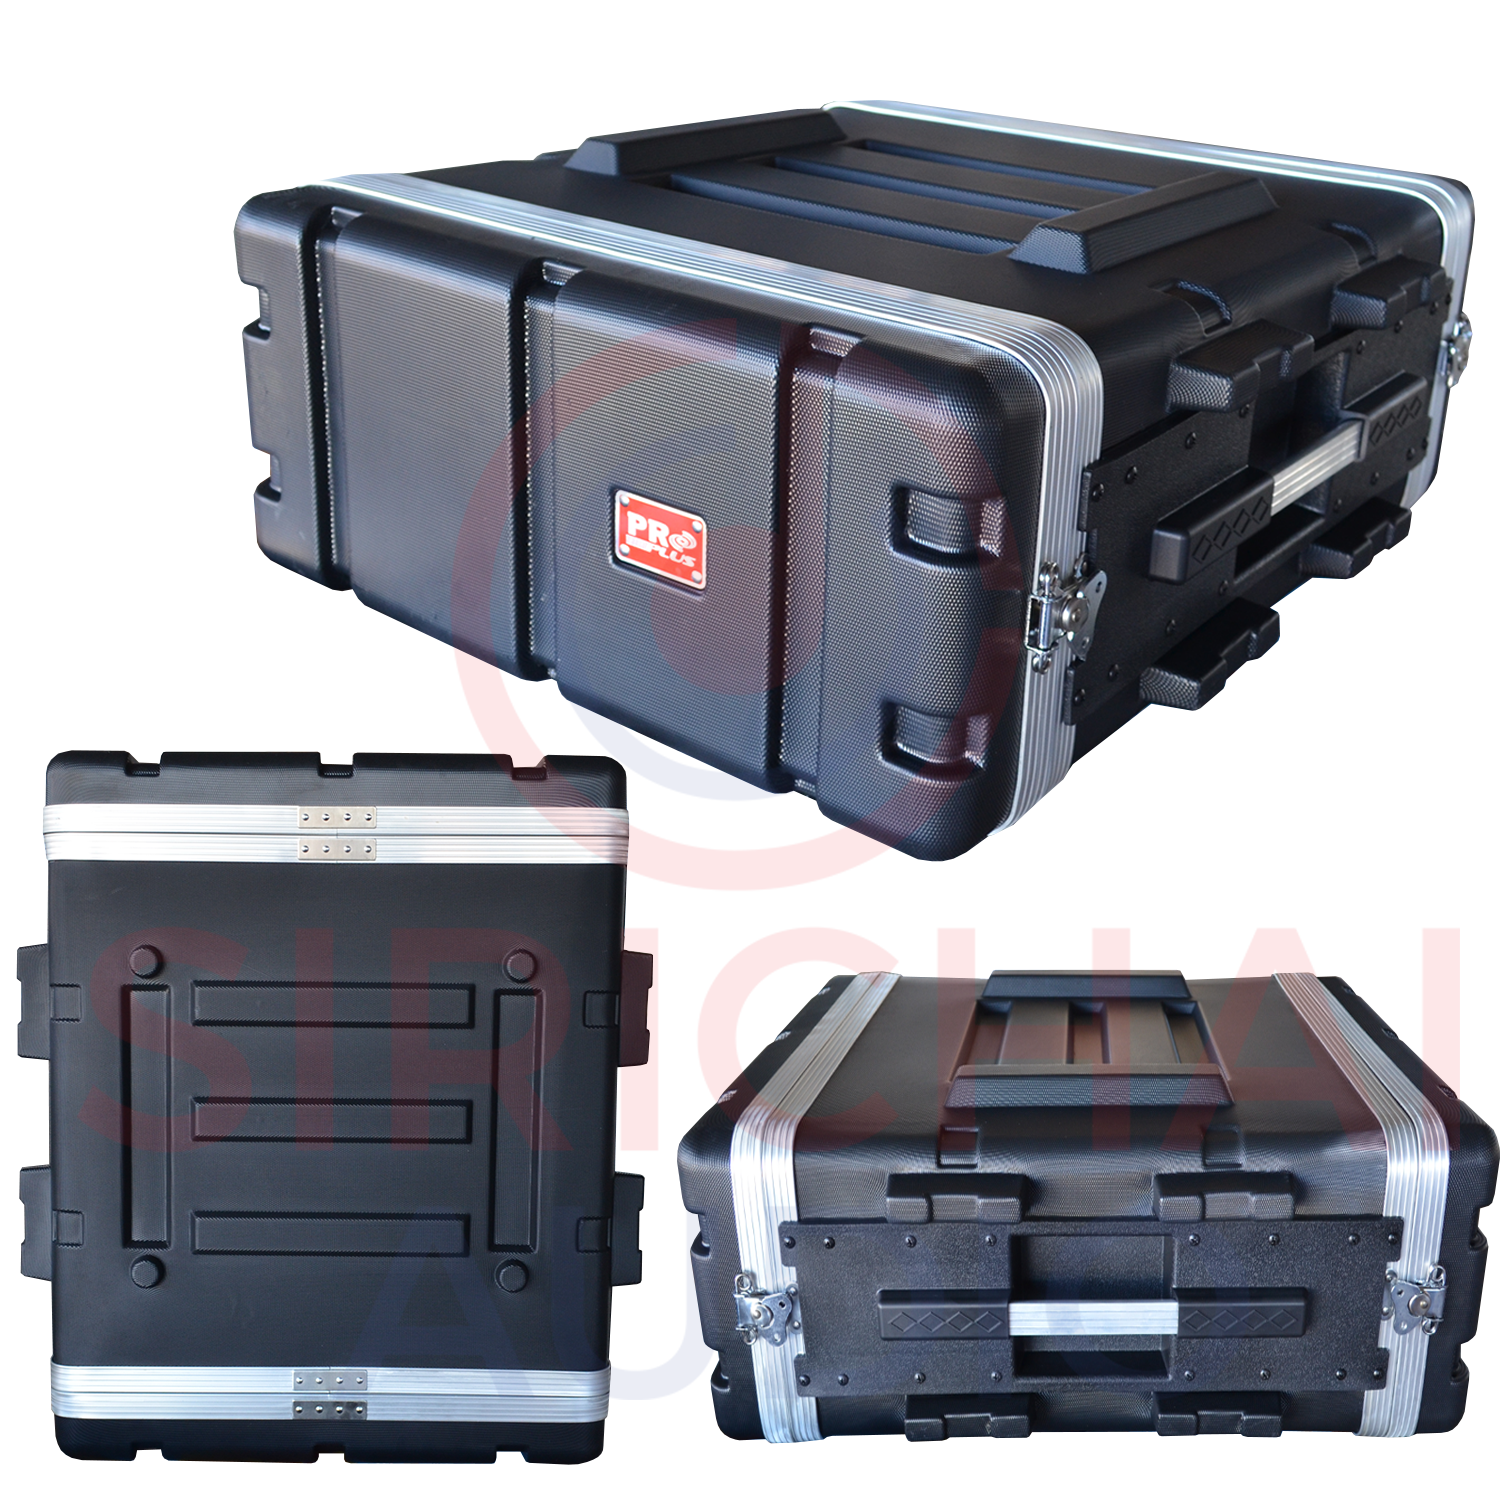 Rack 4UM ตู้แร็ค PROPLUS รุ่น 4U ลึก17นิ้ว ABS มีซิปเก็บอุปกรณ์ ฟรีแถมน็อตยึดมาในกล่อง